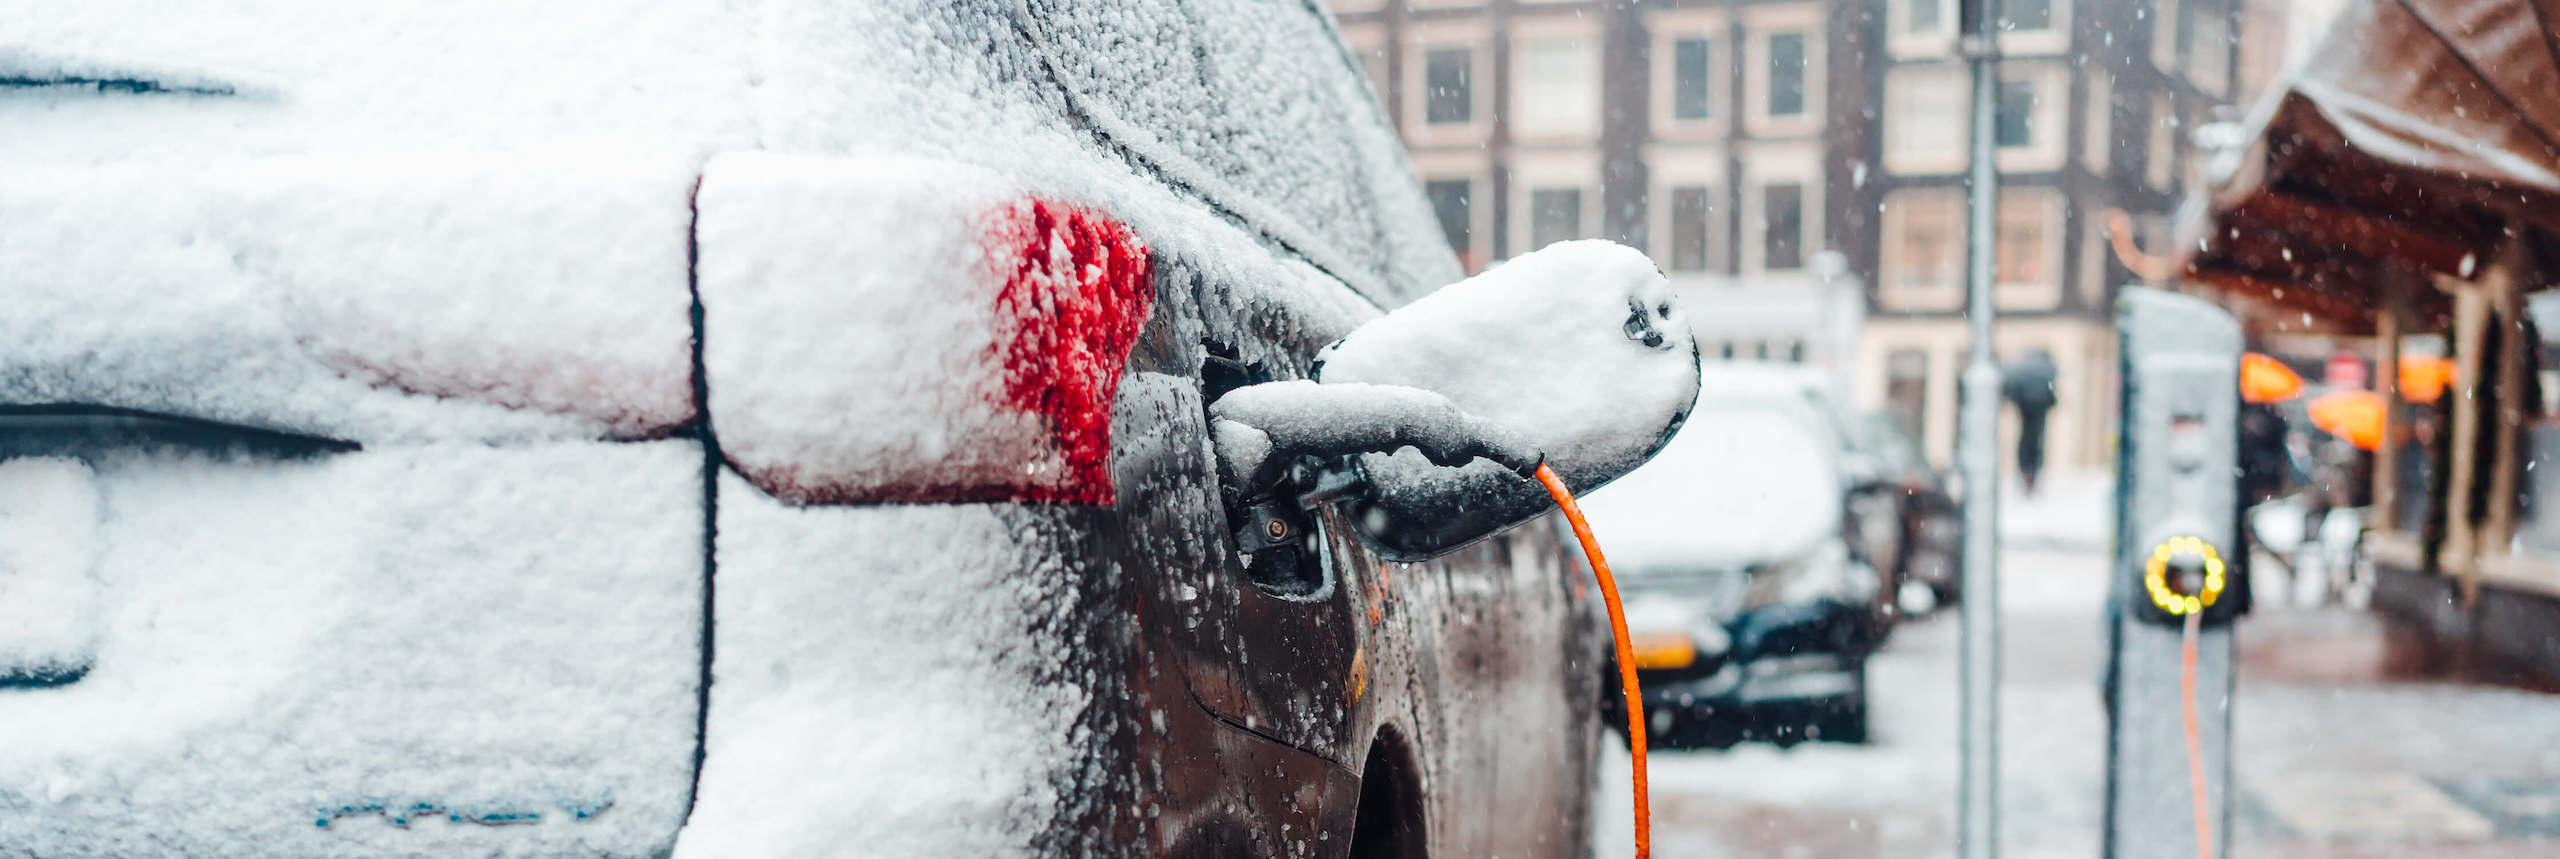 Wie schütze ich mein Auto im Winter? 5 Tipps zur Autopflege im